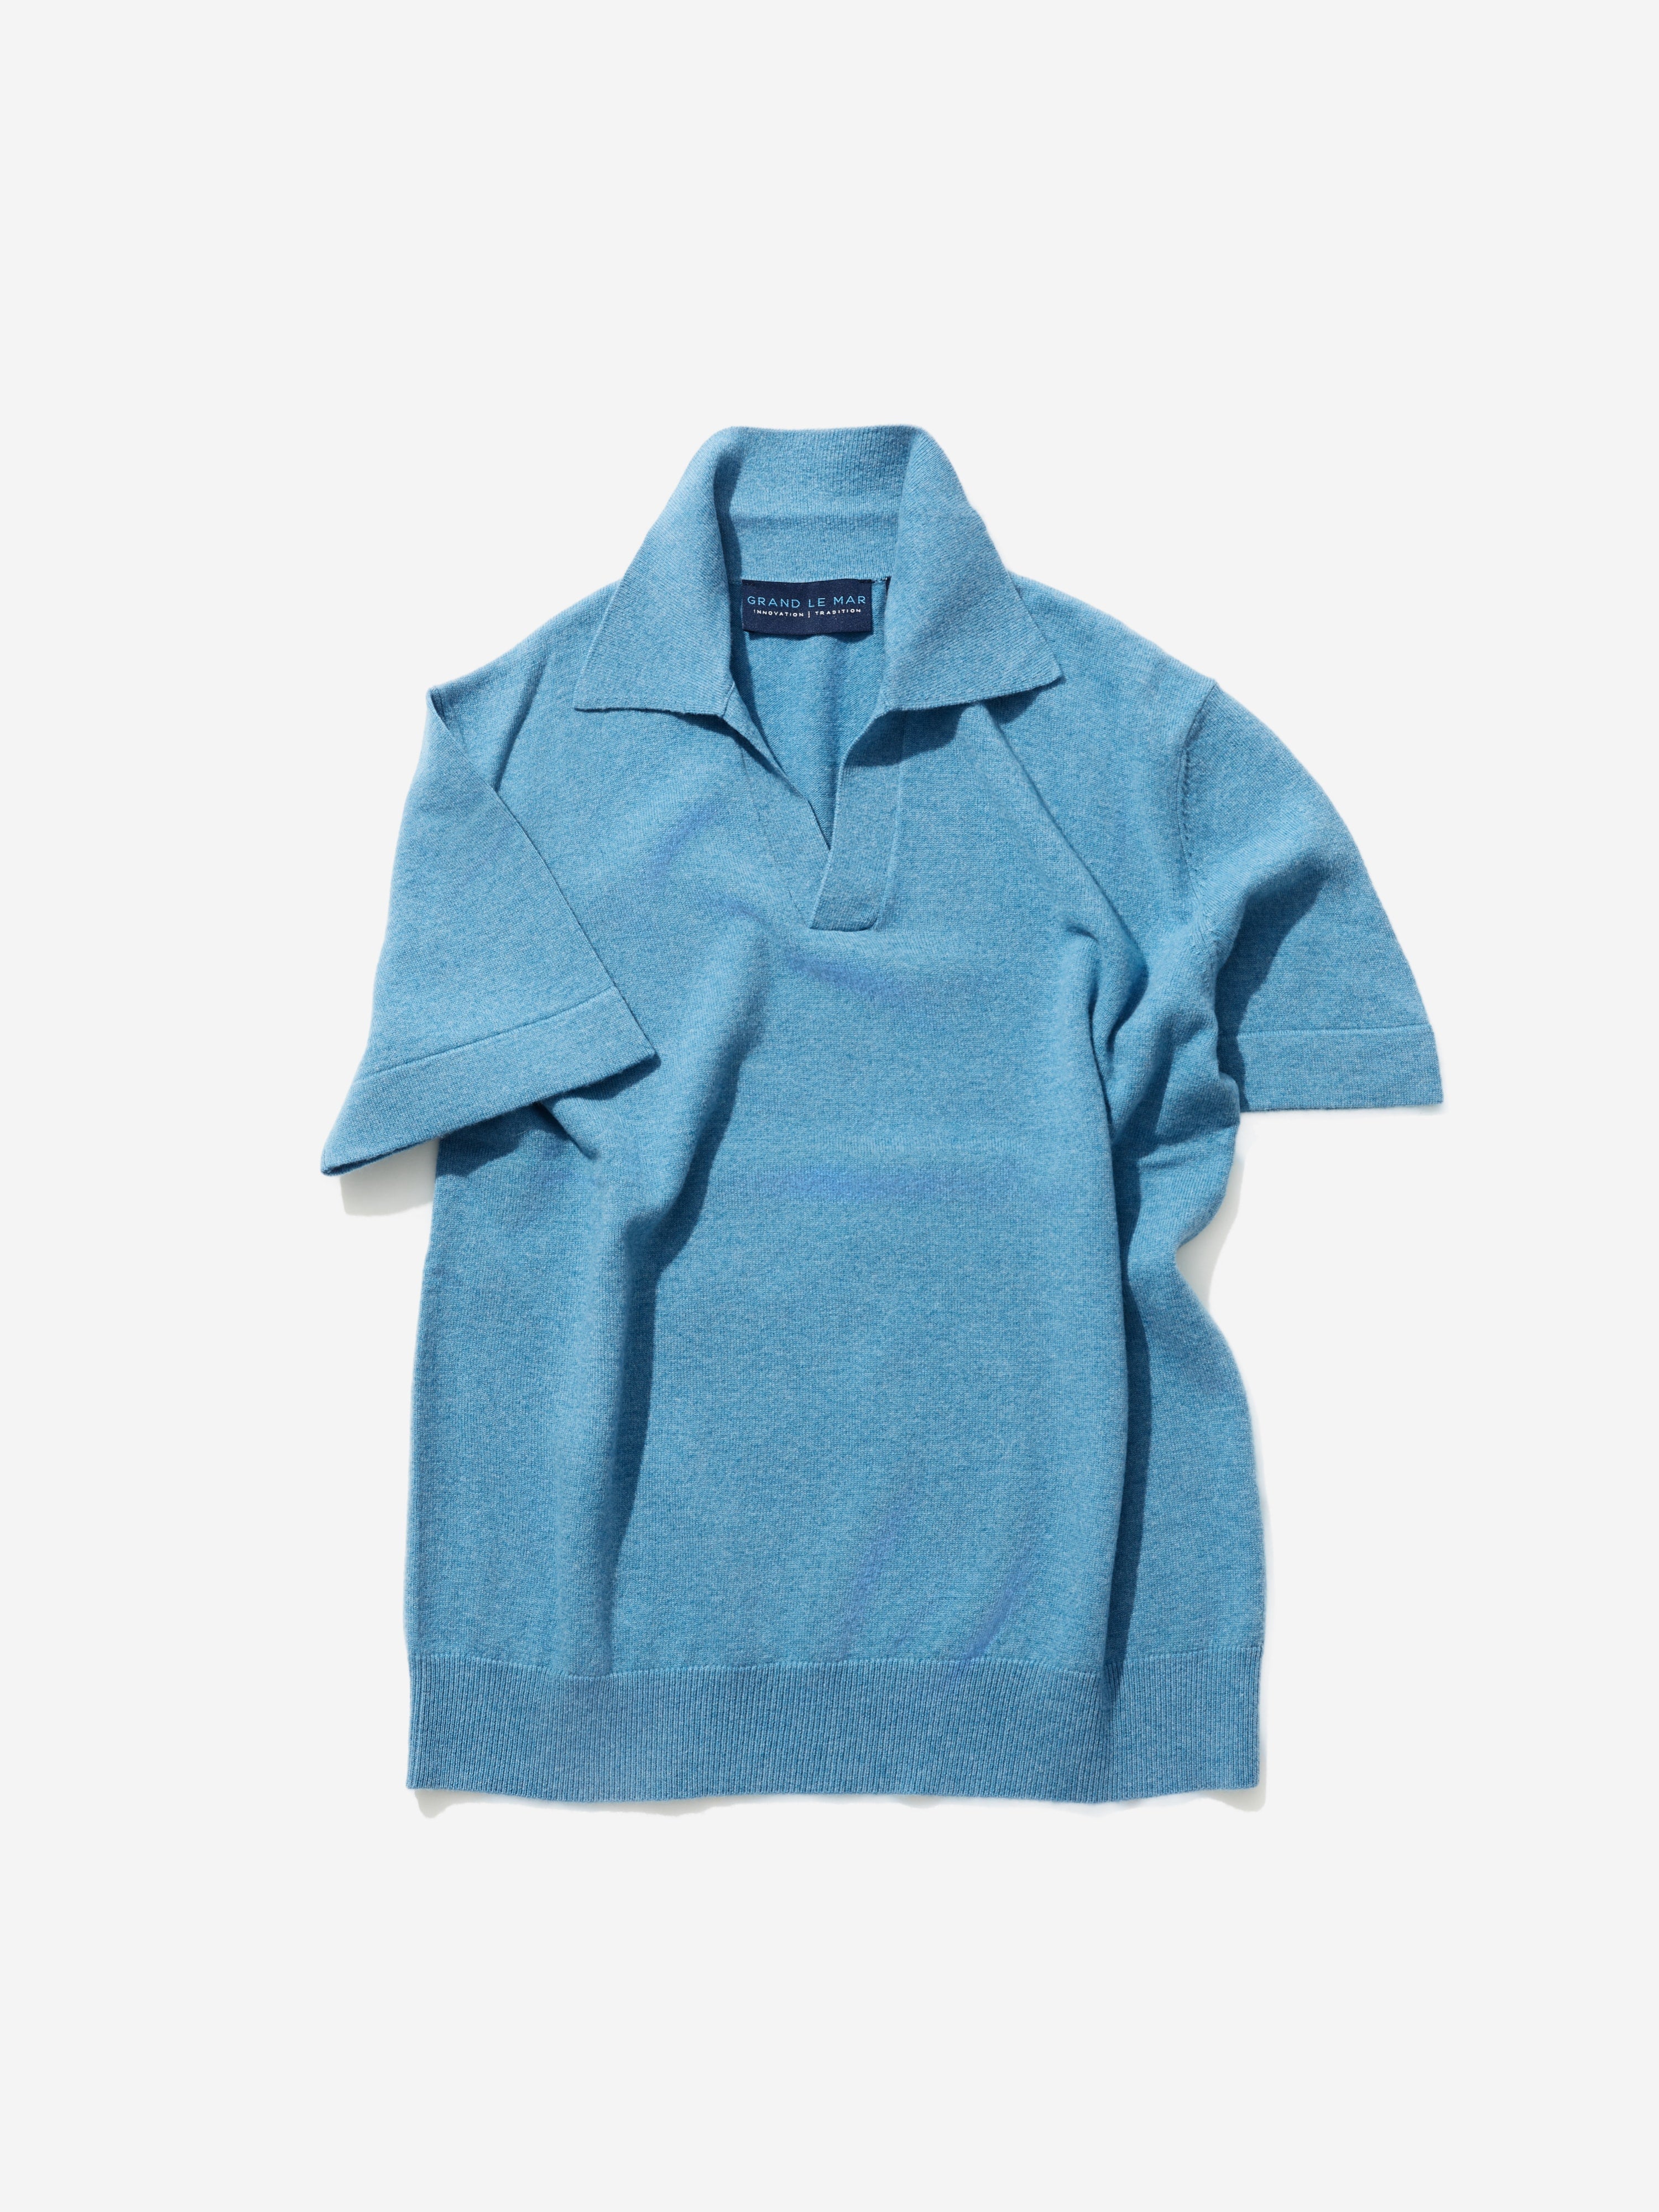 Blue Merino Wool Cashmere Polo - Grand Le Mar